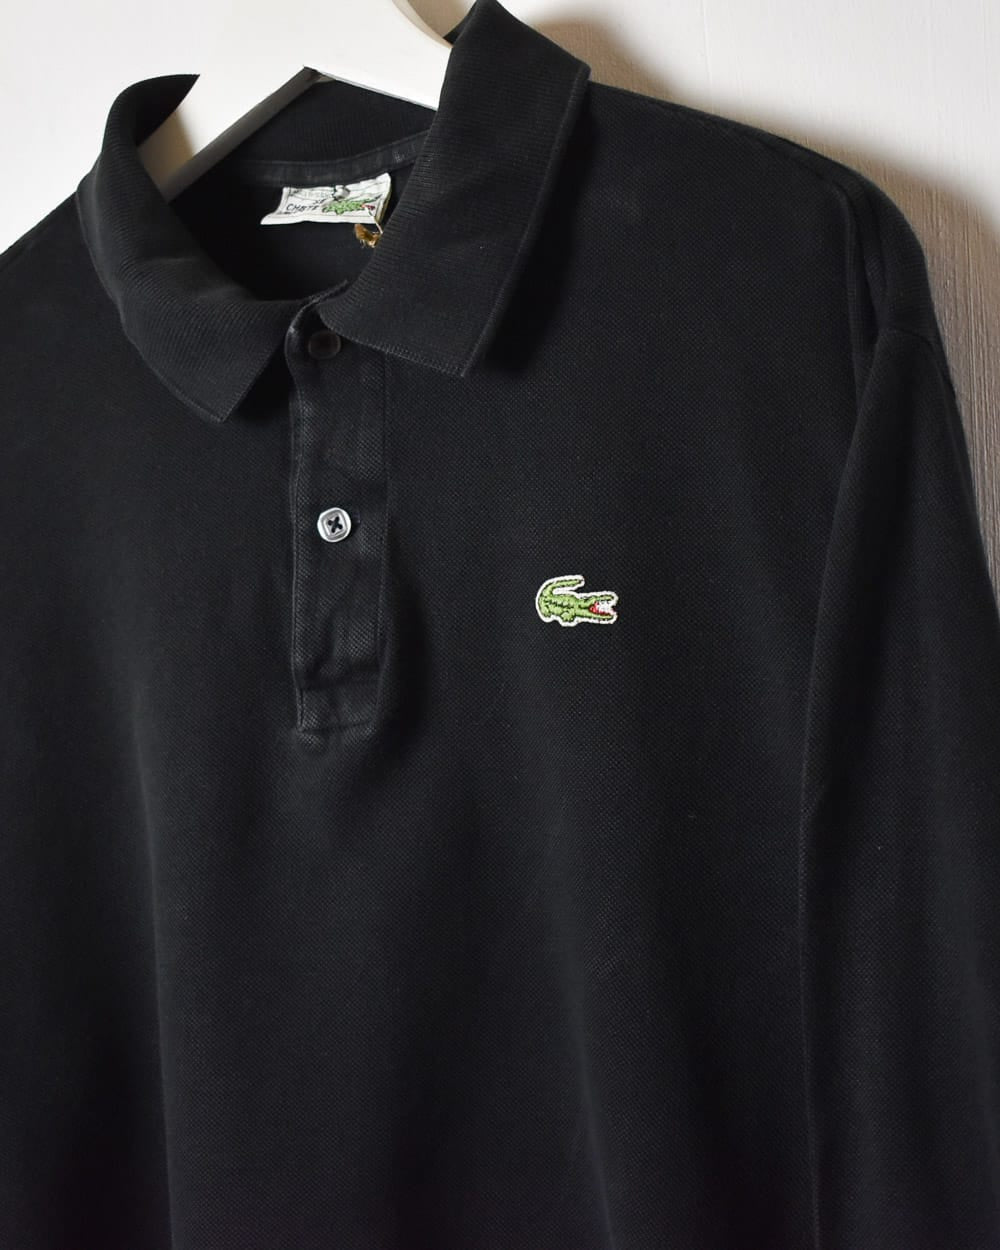 Black Chemise Lacoste Long Sleeved Polo Shirt - Medium